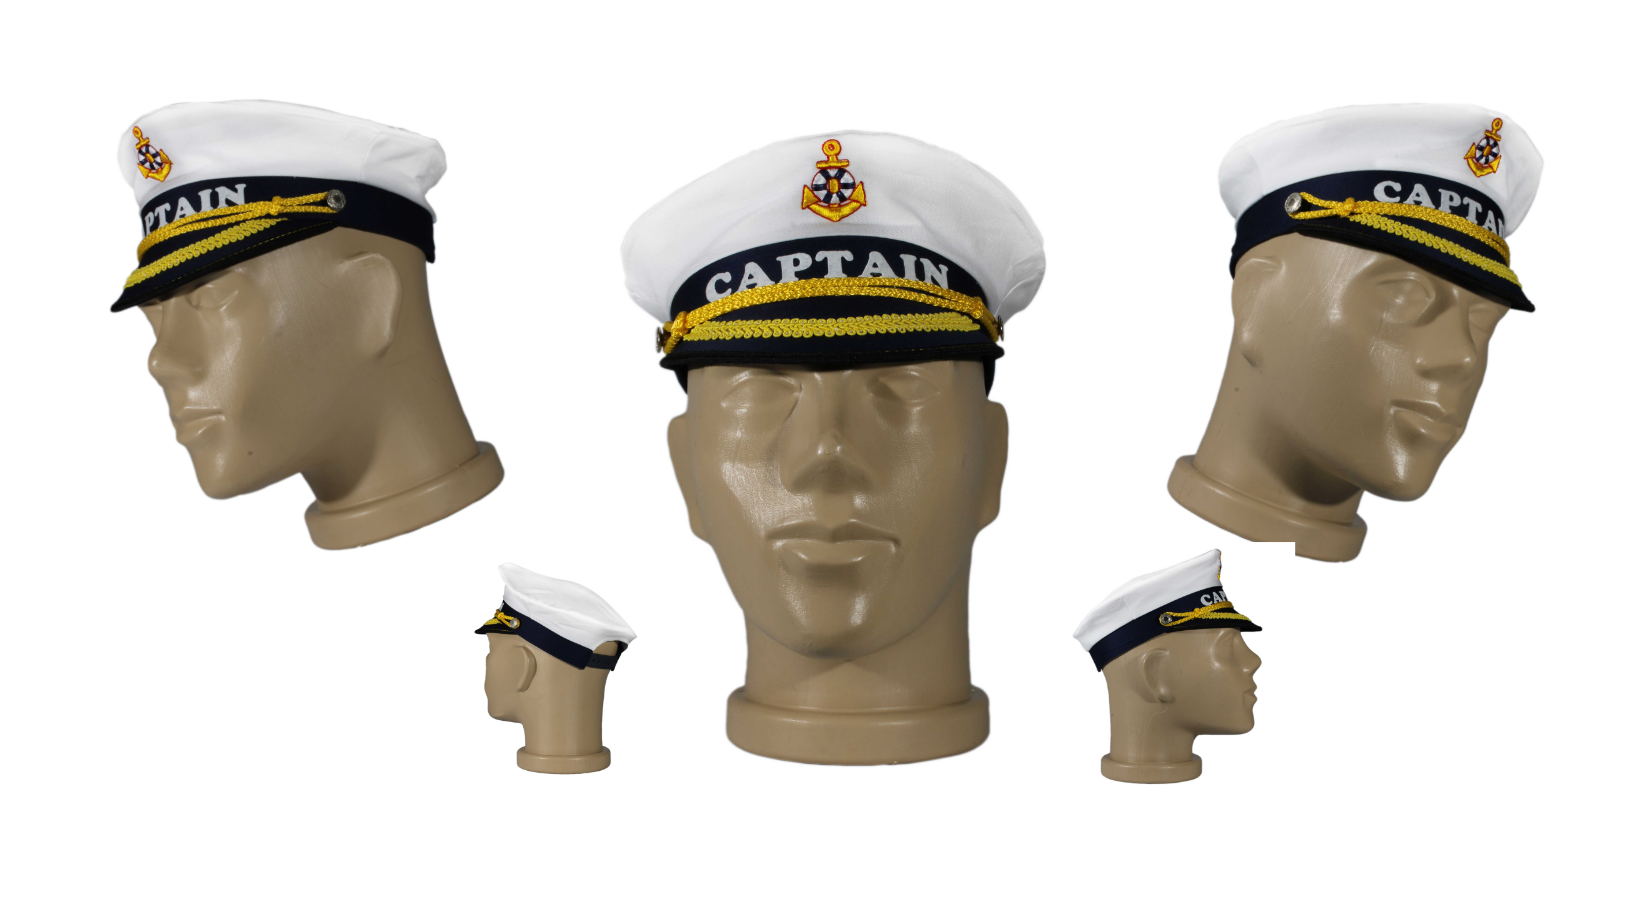 Sailor Series Captain Hat